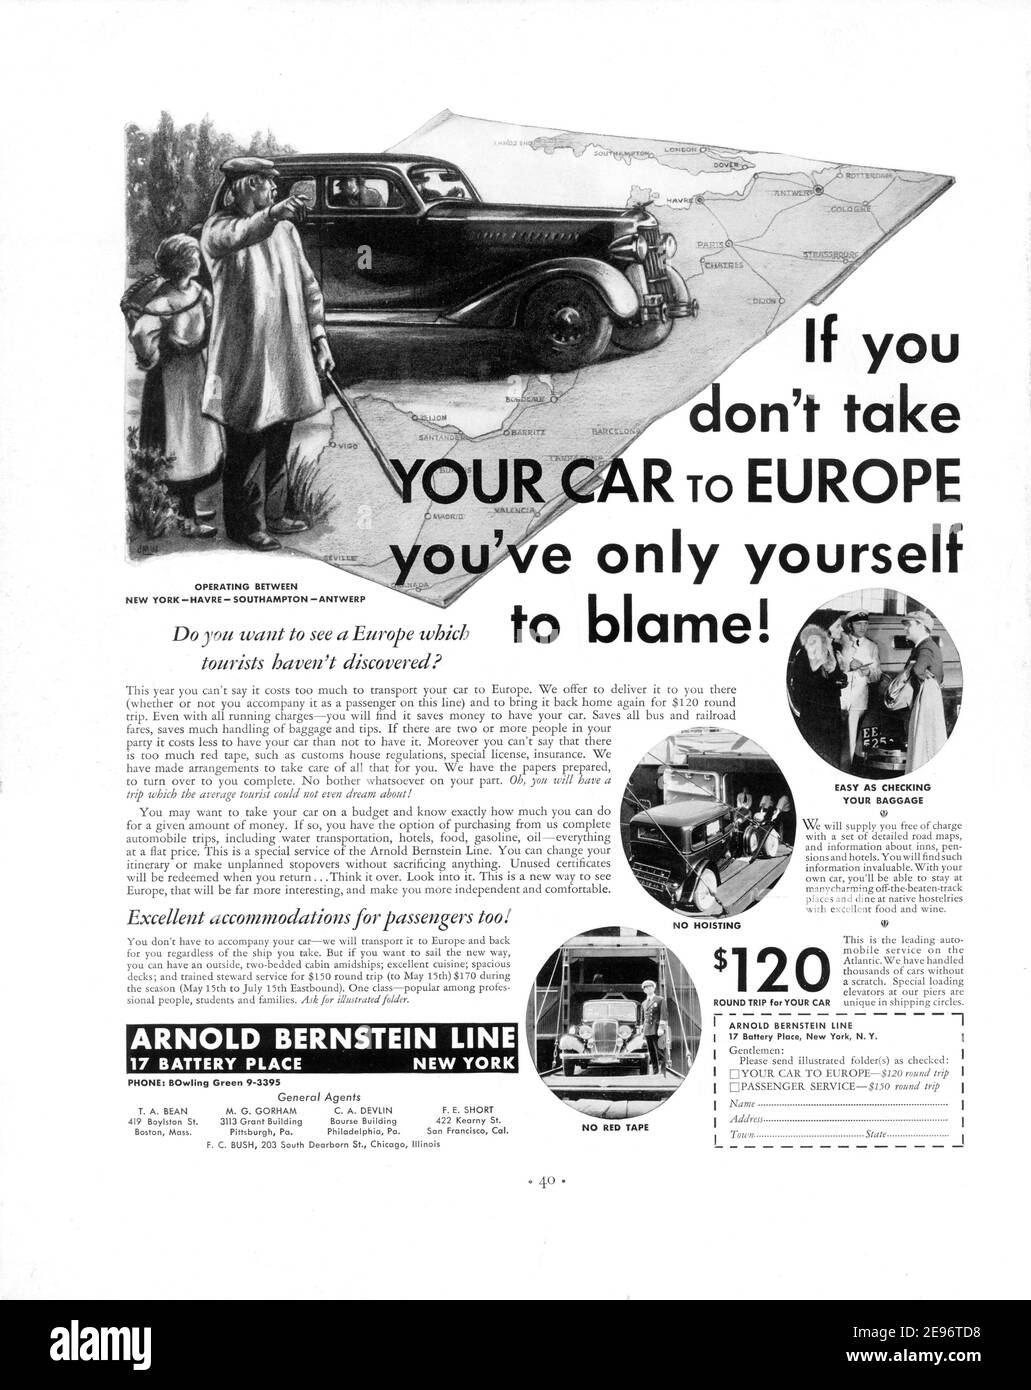 1935 Arnold Bernstein línea 'Si no llevas tu coche a Europa solo tienes que culpar' Anuncio, retocado y revivido, A3+, 600dpi Foto de stock